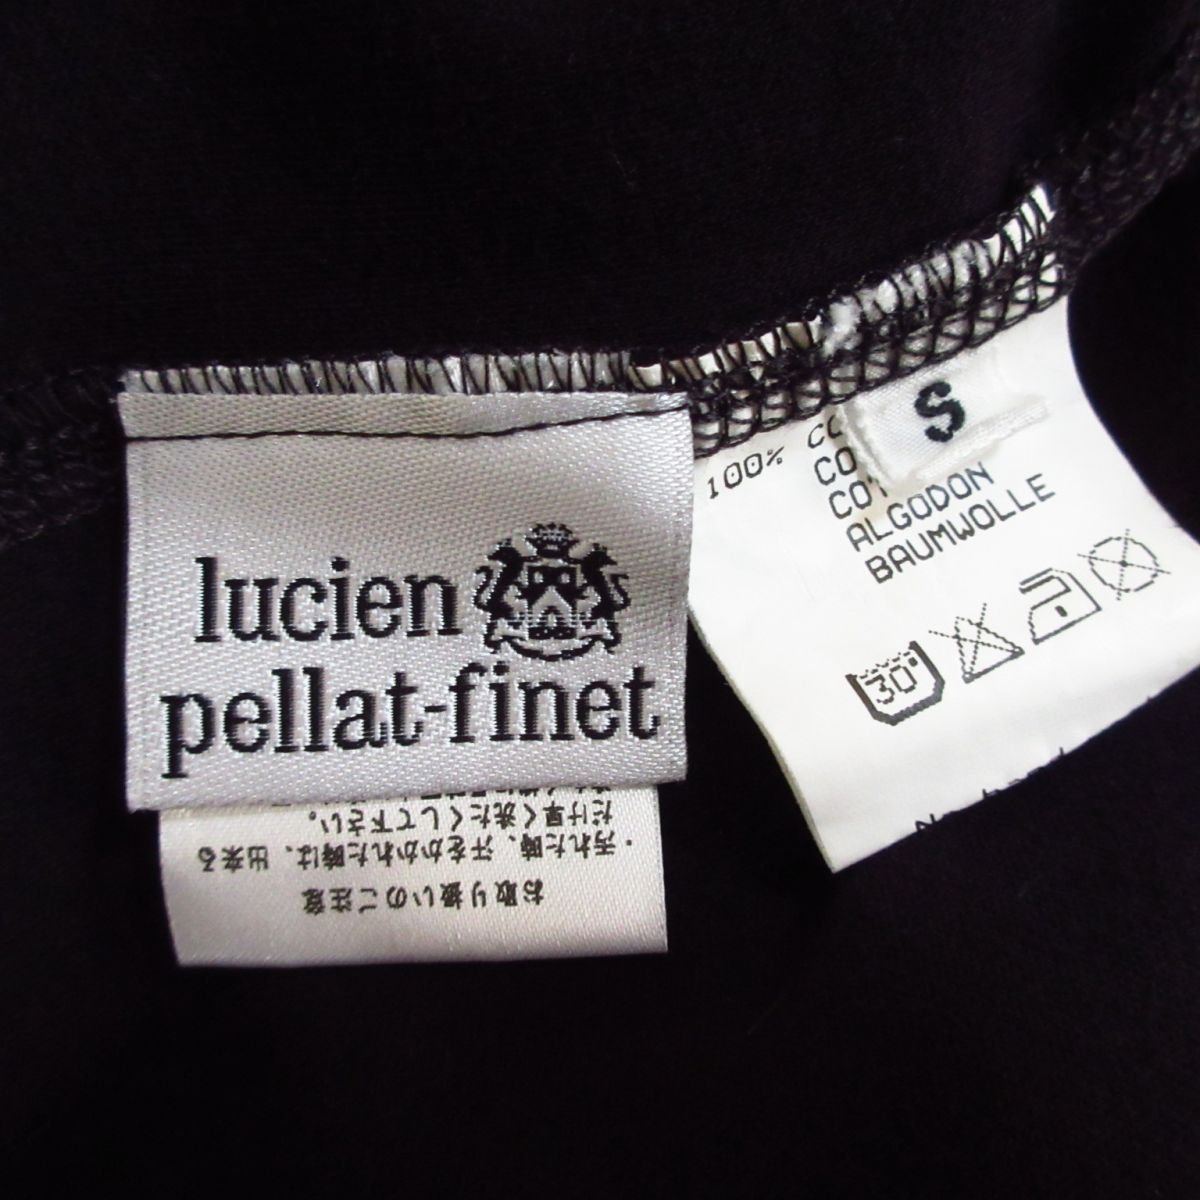 美品 Lucien pellat-finet ルシアンペラフィネ マリファナチェーン装飾 クルーネック 長袖 Tシャツ カットソー S 黒 ブラック 122_画像8